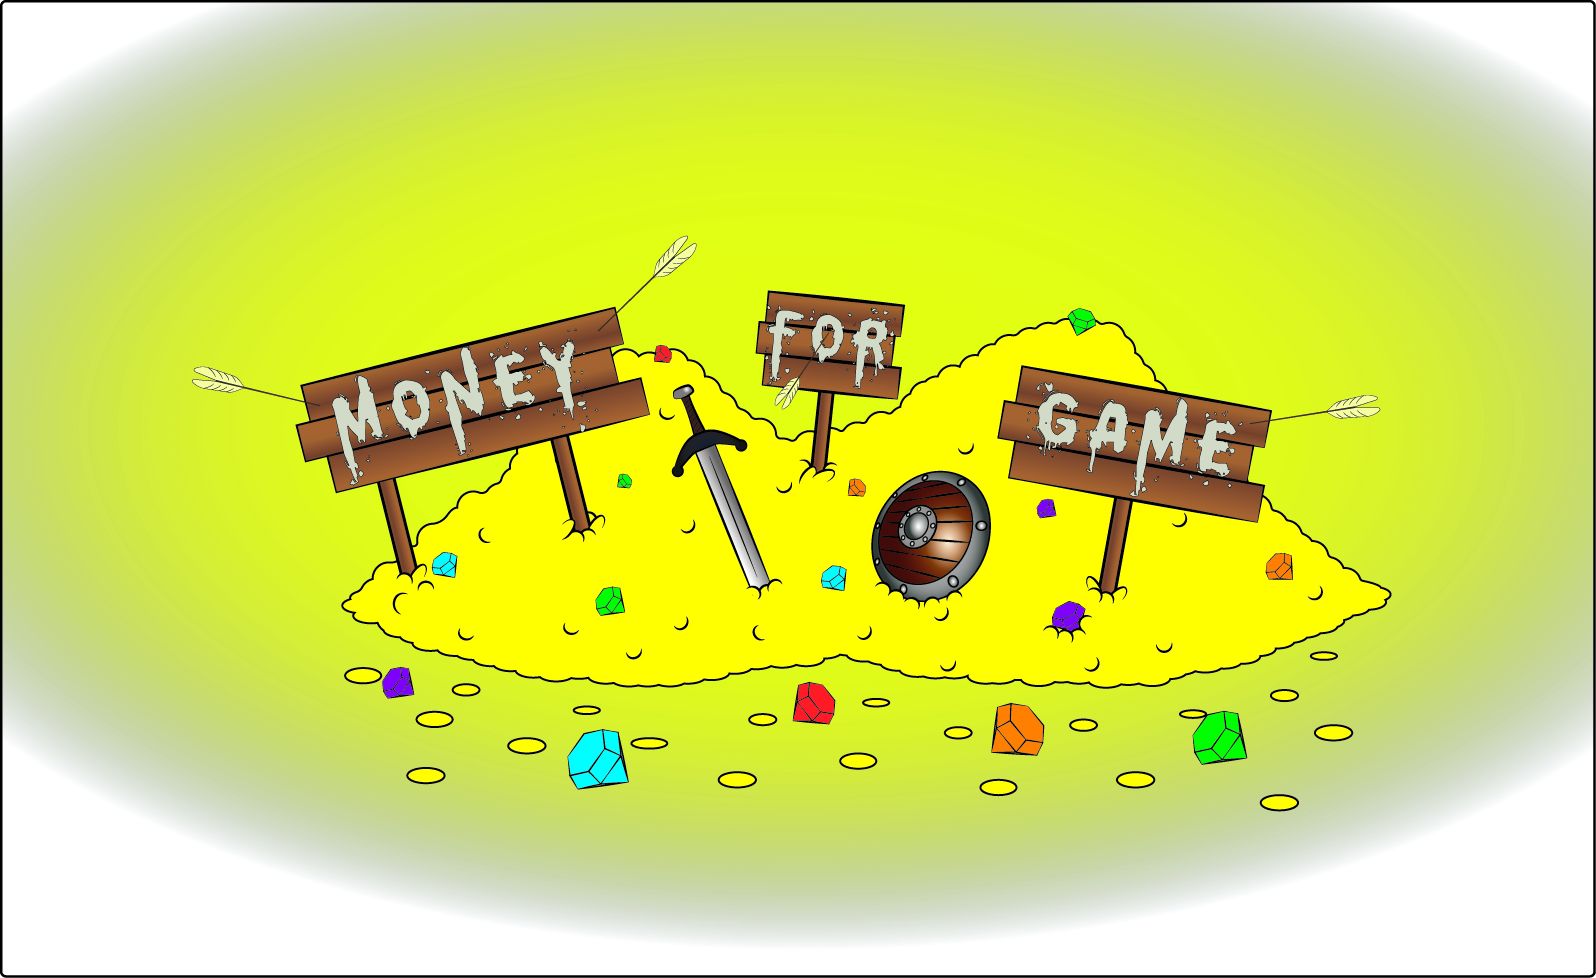 Логотип для проекта Money for Game - дизайнер Pormo